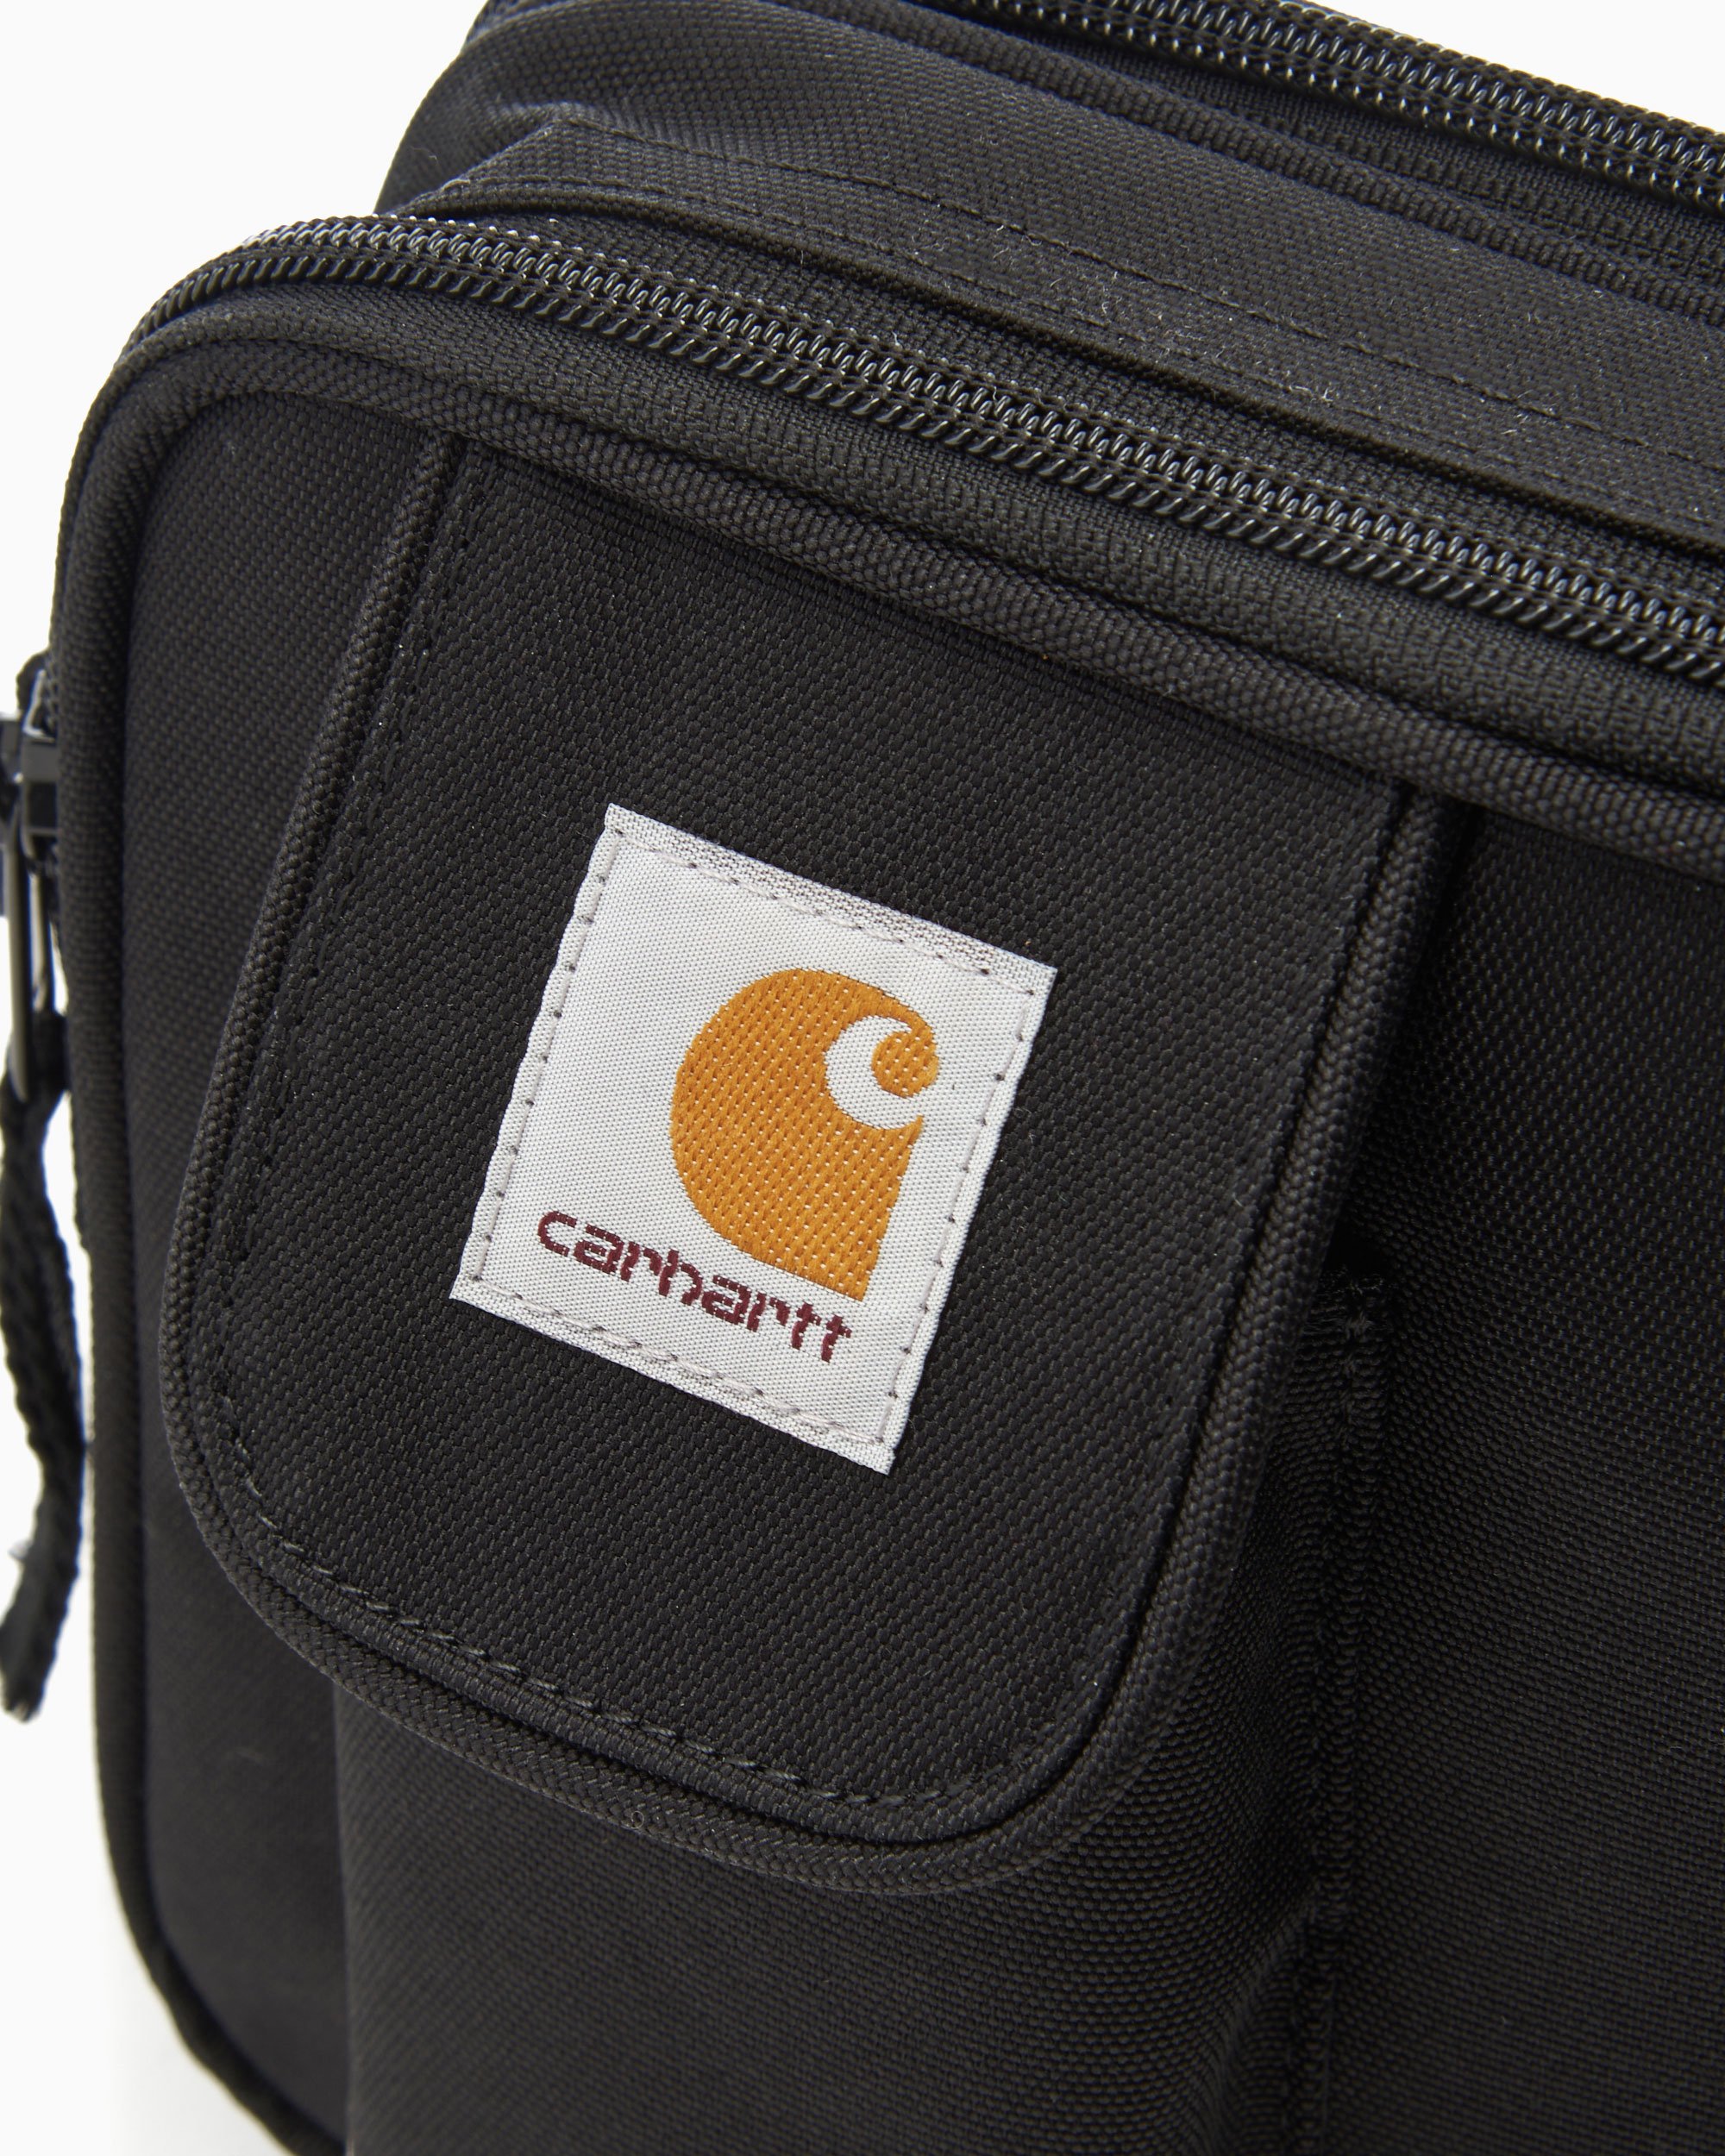 Carhartt Wip Small Essentials Bag Black Shoulder Bag, 57% OFF